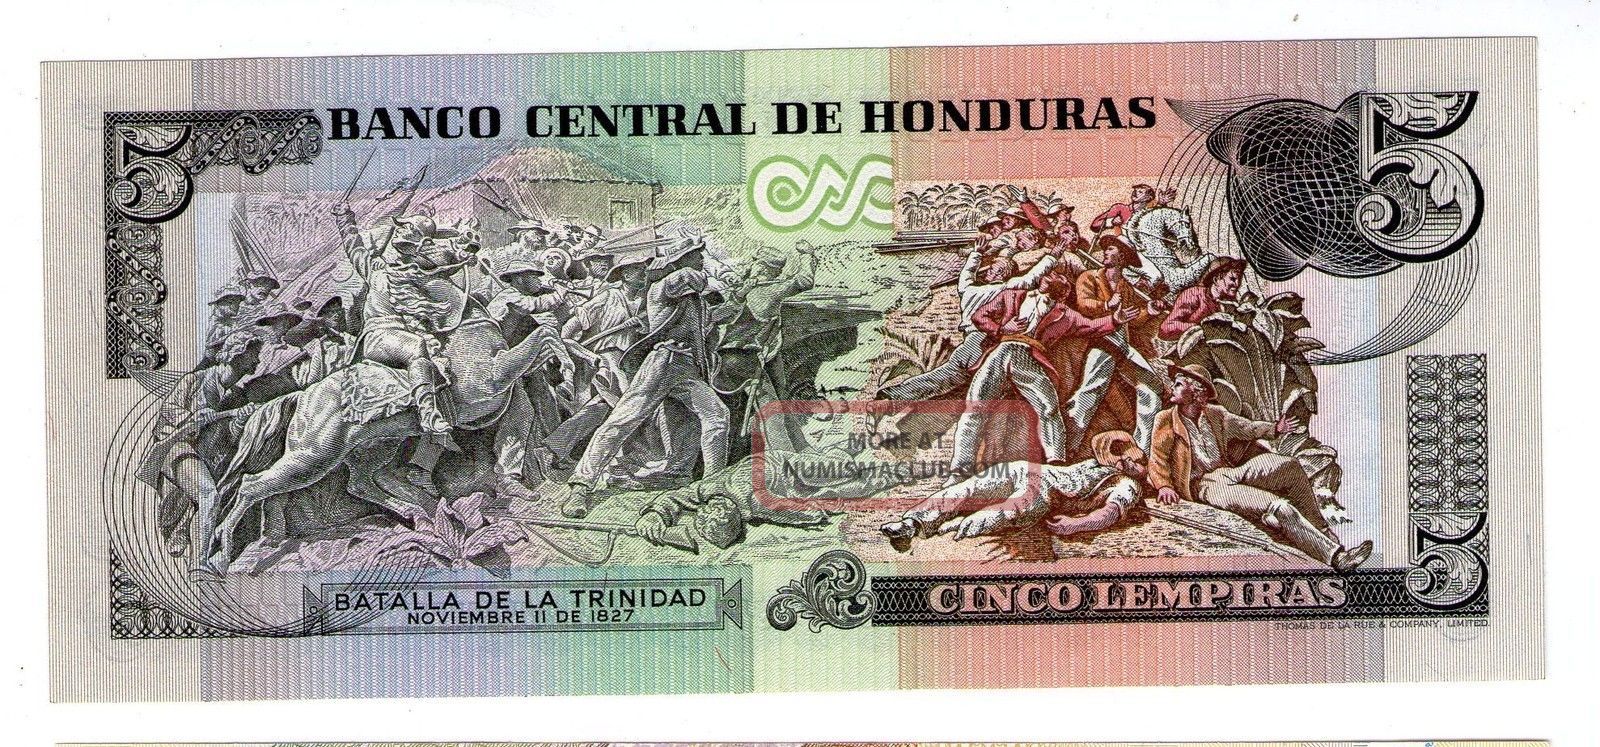 Honduras Note 5 Lempiras 4. 10. 1978 P 63a Unc